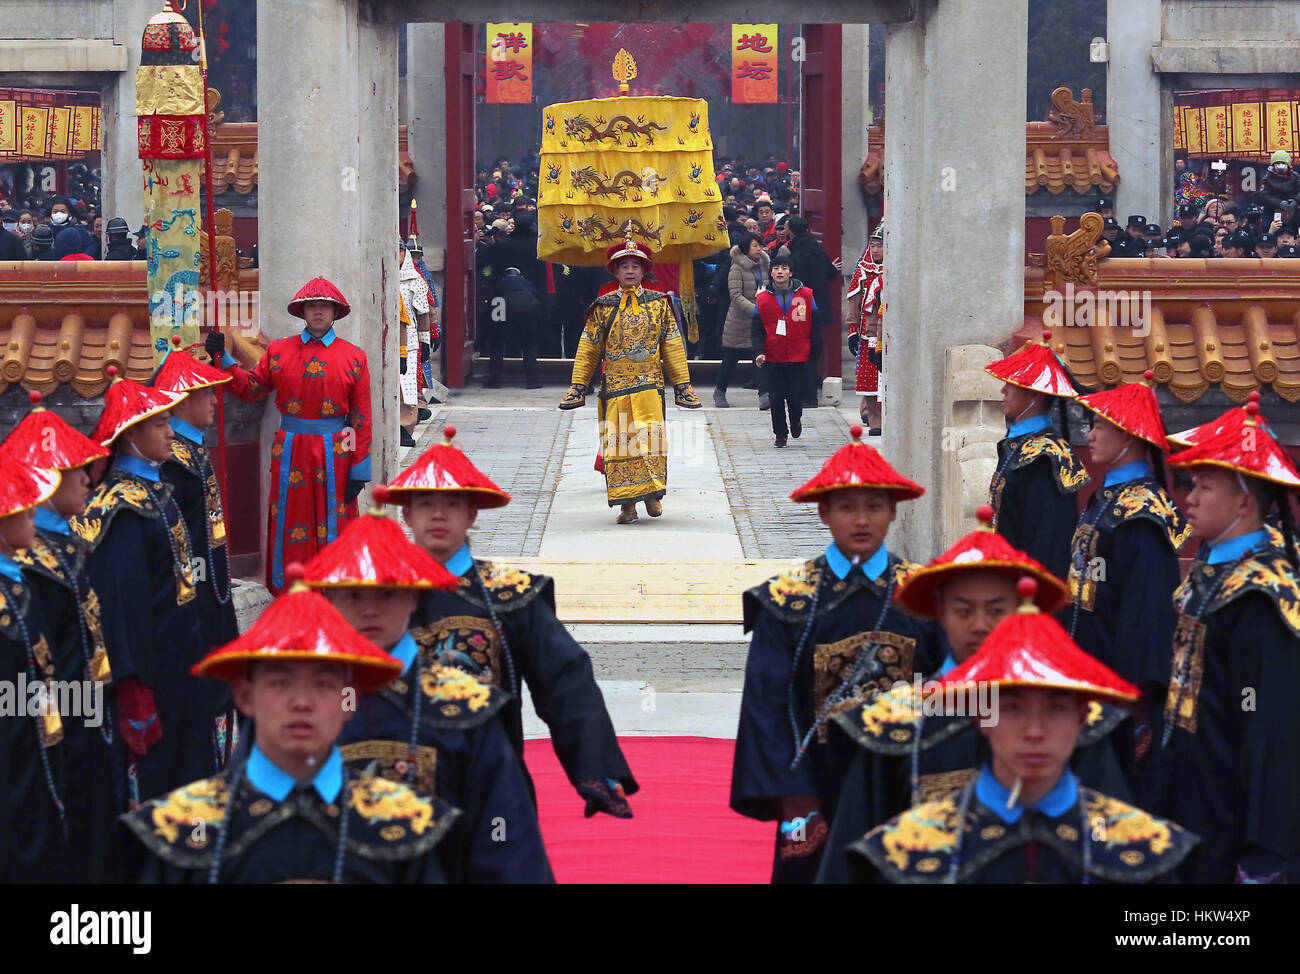 28. Januar 2017 - Peking, CHINA - Chinesisch in kaiserliche Qing-Dynastie Tracht gekleidet führen eine Tempelzeremonie Anbetung im Ditan Park Alter der Erde zu Beginn des chinesischen Neujahrs - das Jahr des Hahnes - im Ditan Park in Peking am 28. Januar 2017 feiern.  Millionen von Chinesen unter der Leitung von Tempeln und Park Messen für ein vielversprechender Start, Lunar New Year wünschen auch bekannt als Frühlingsfest. (Kredit-Bild: © Stephen Rasierer über ZUMA Draht) Stockfoto